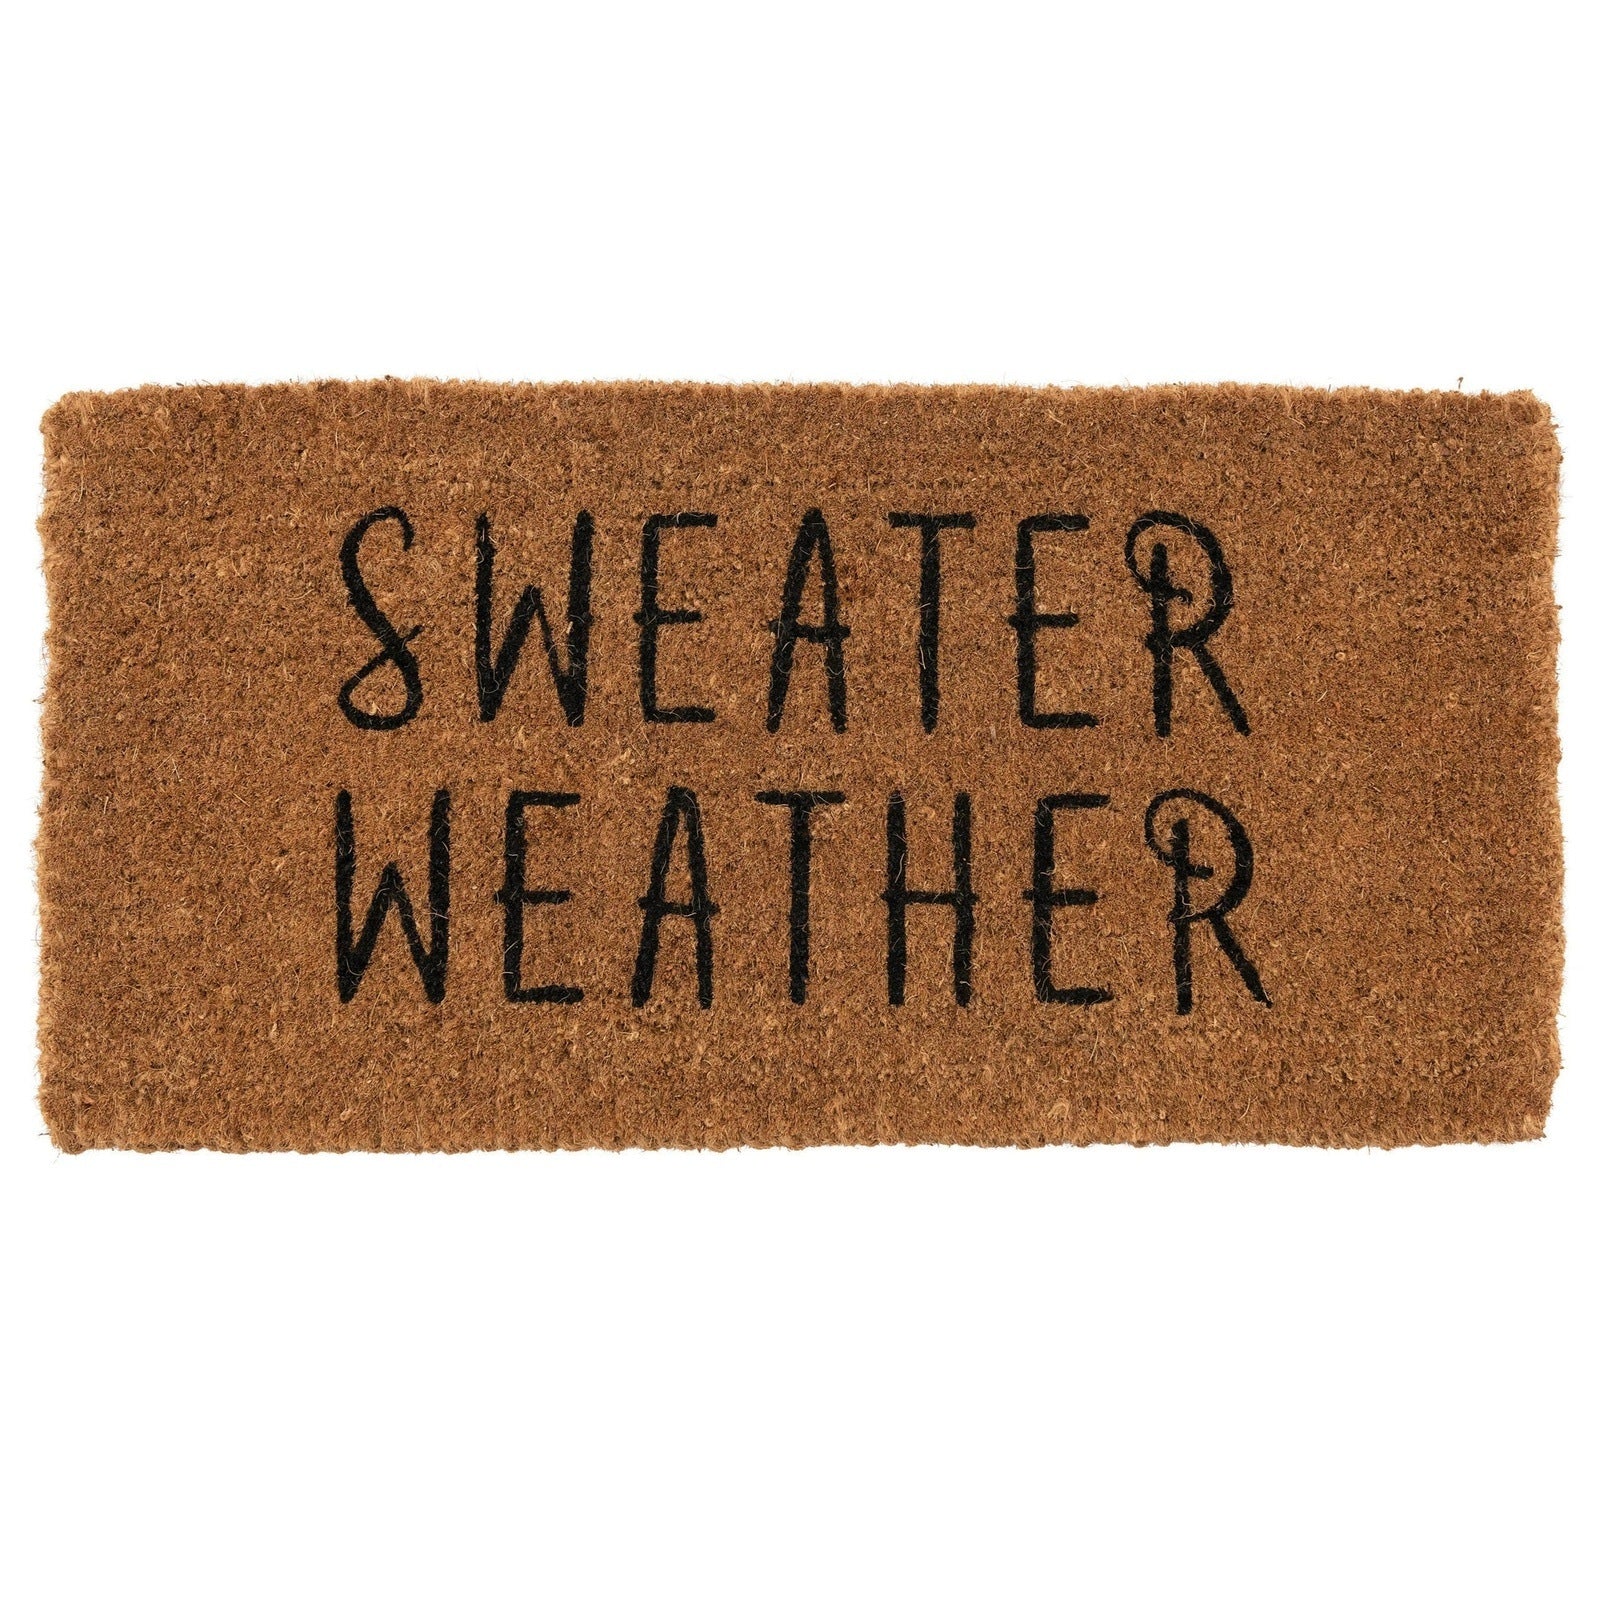 Sweater Weather Door Mat